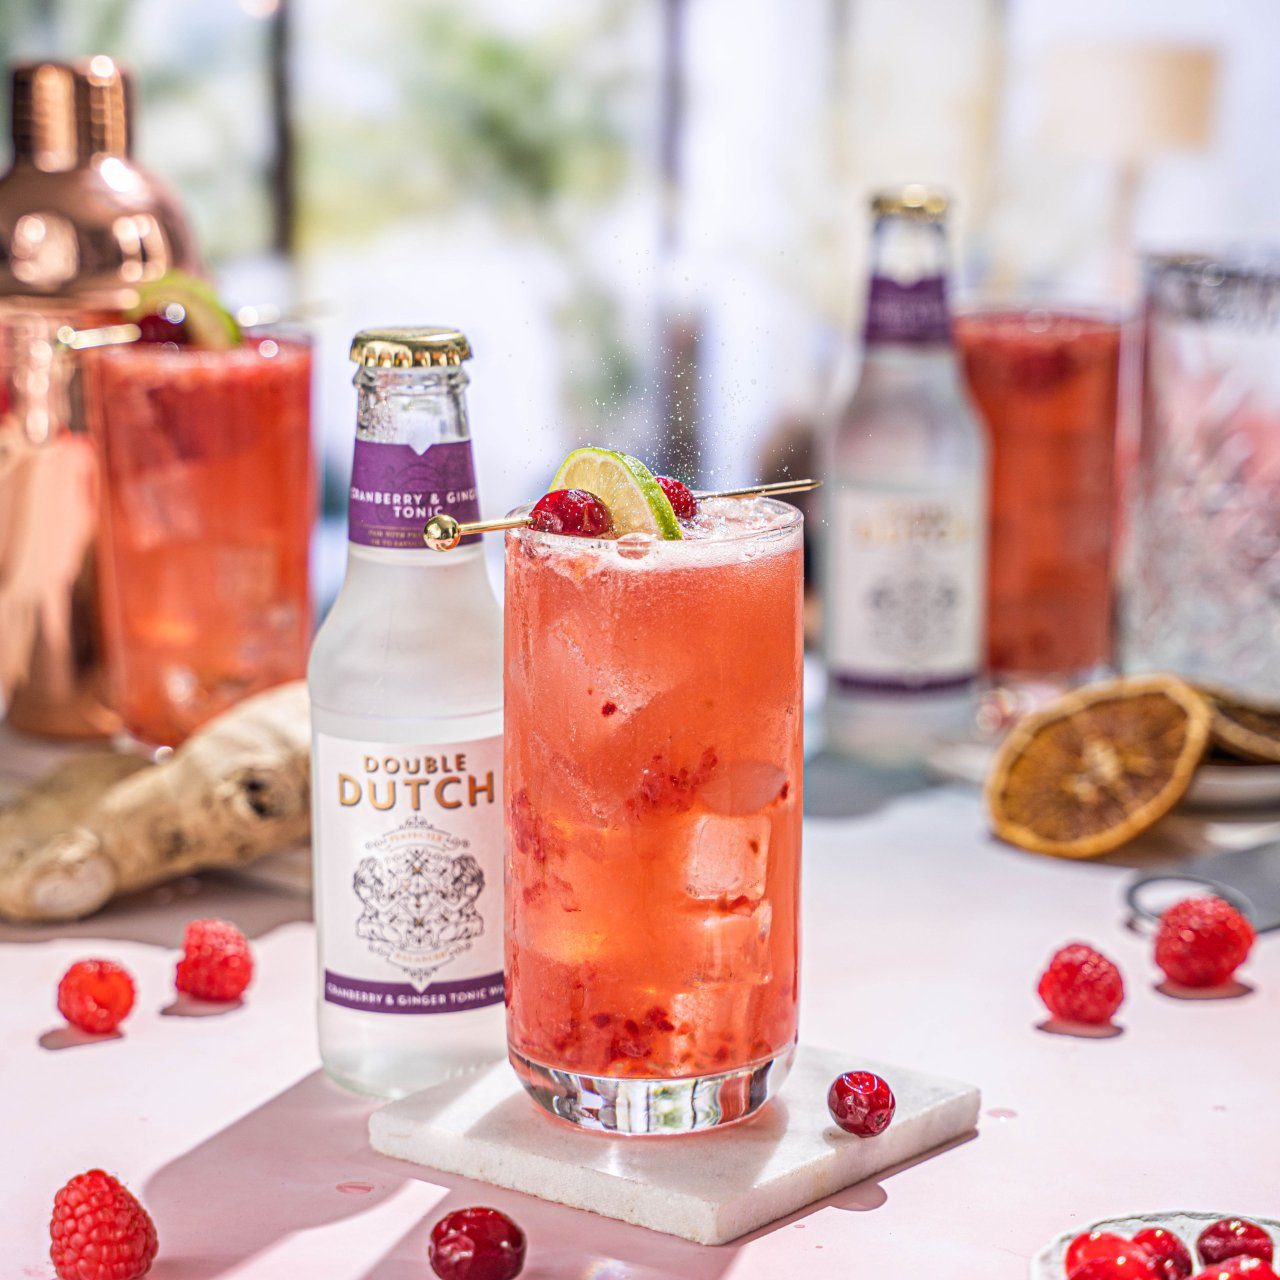 Onze Raspberry Smash is gemaakt van onze zoete en pittige Double Dutch Cranberry & Ginger Tonic, gemengd met verse frambozen, knapperige wodka en limoensap!